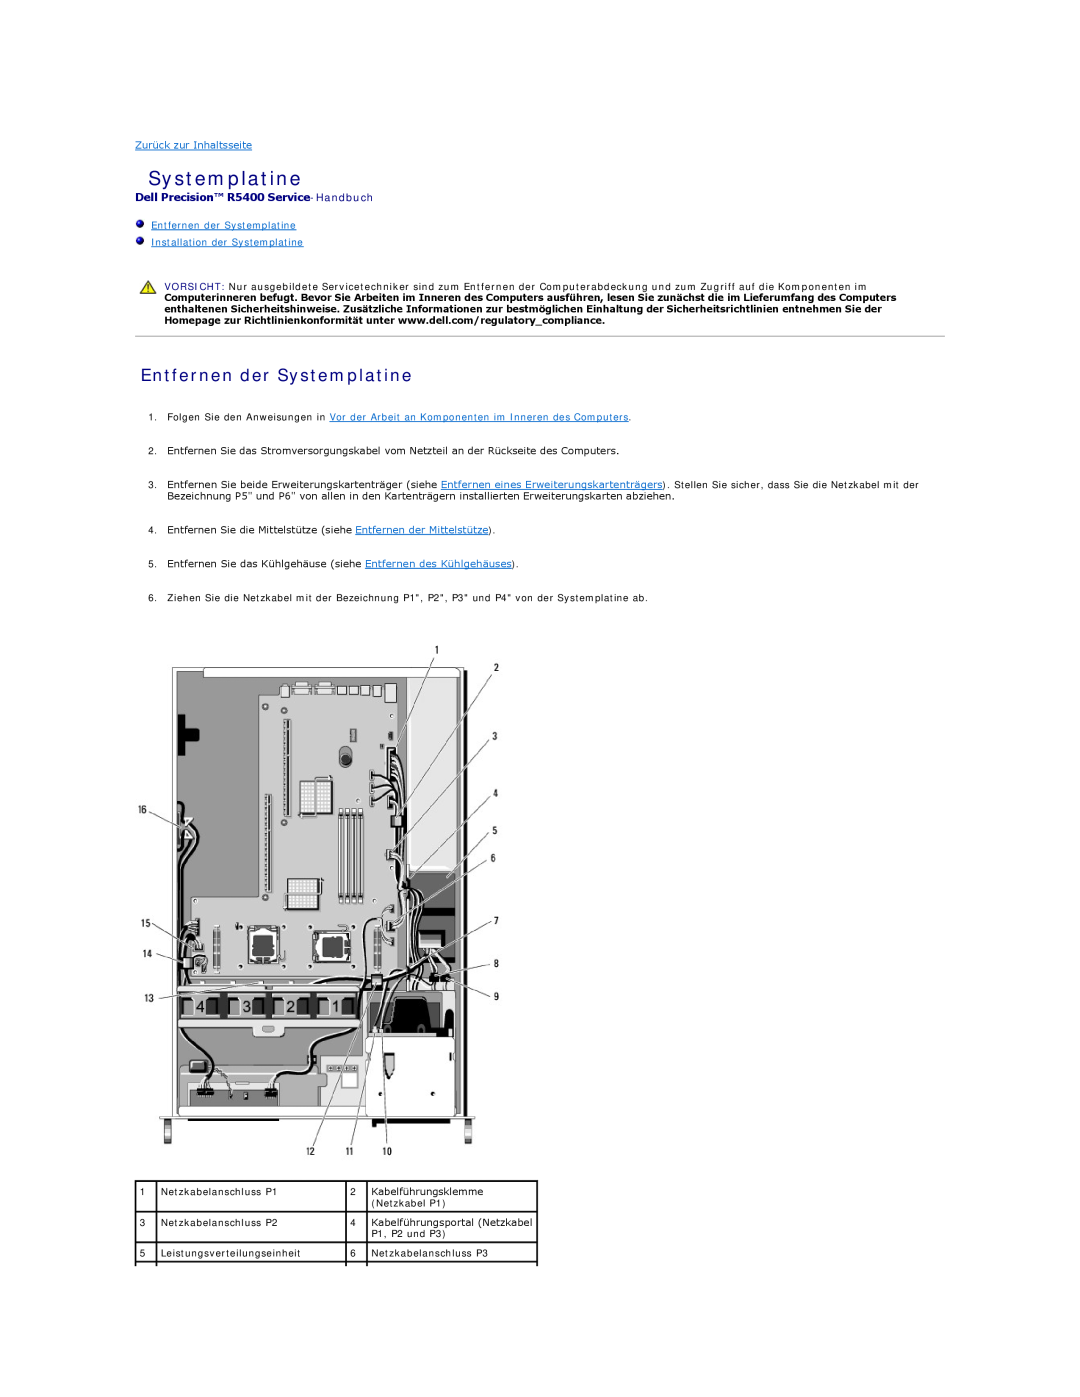 Dell manual Entfernen der Systemplatine Installation der Systemplatine, Dell Precision R5400 Service-Handbuch 